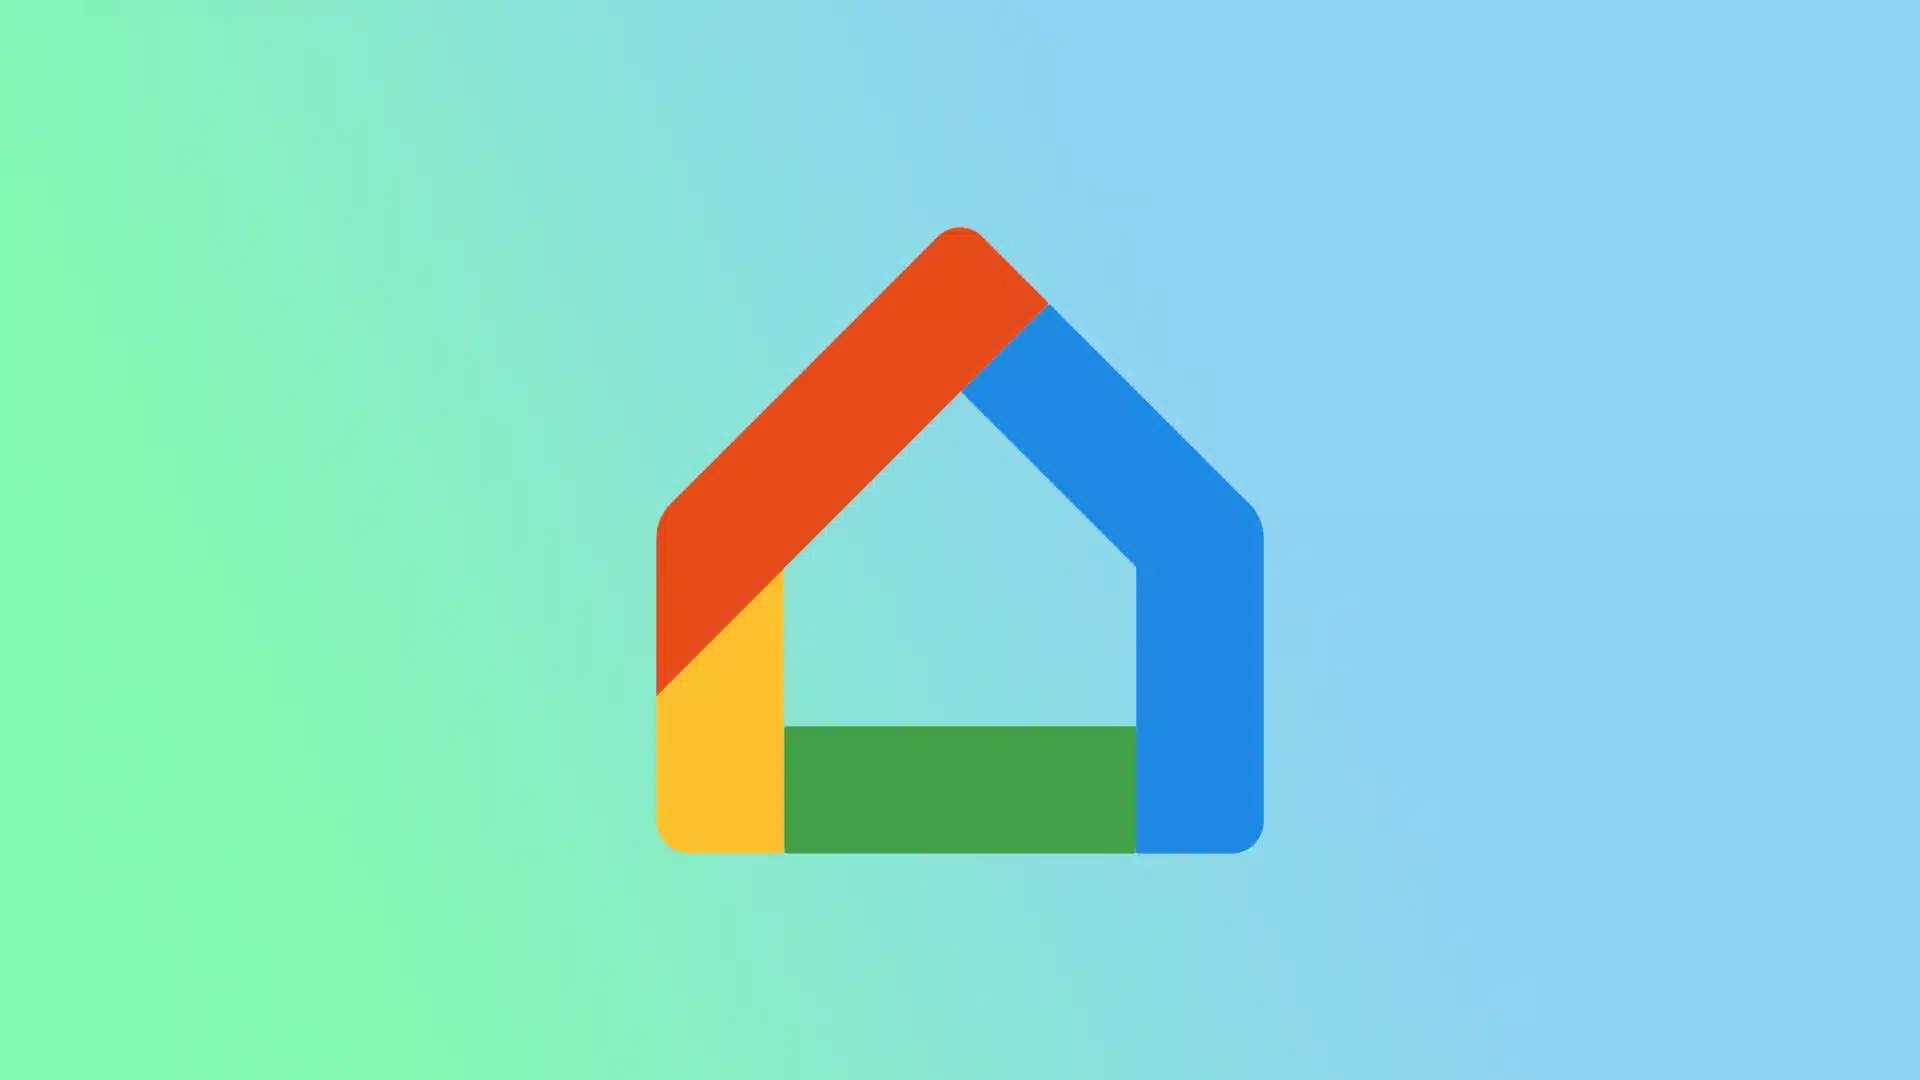 جوجل تتيح التحكم في بعض أجهزة المنزل بتطبيق Google Home